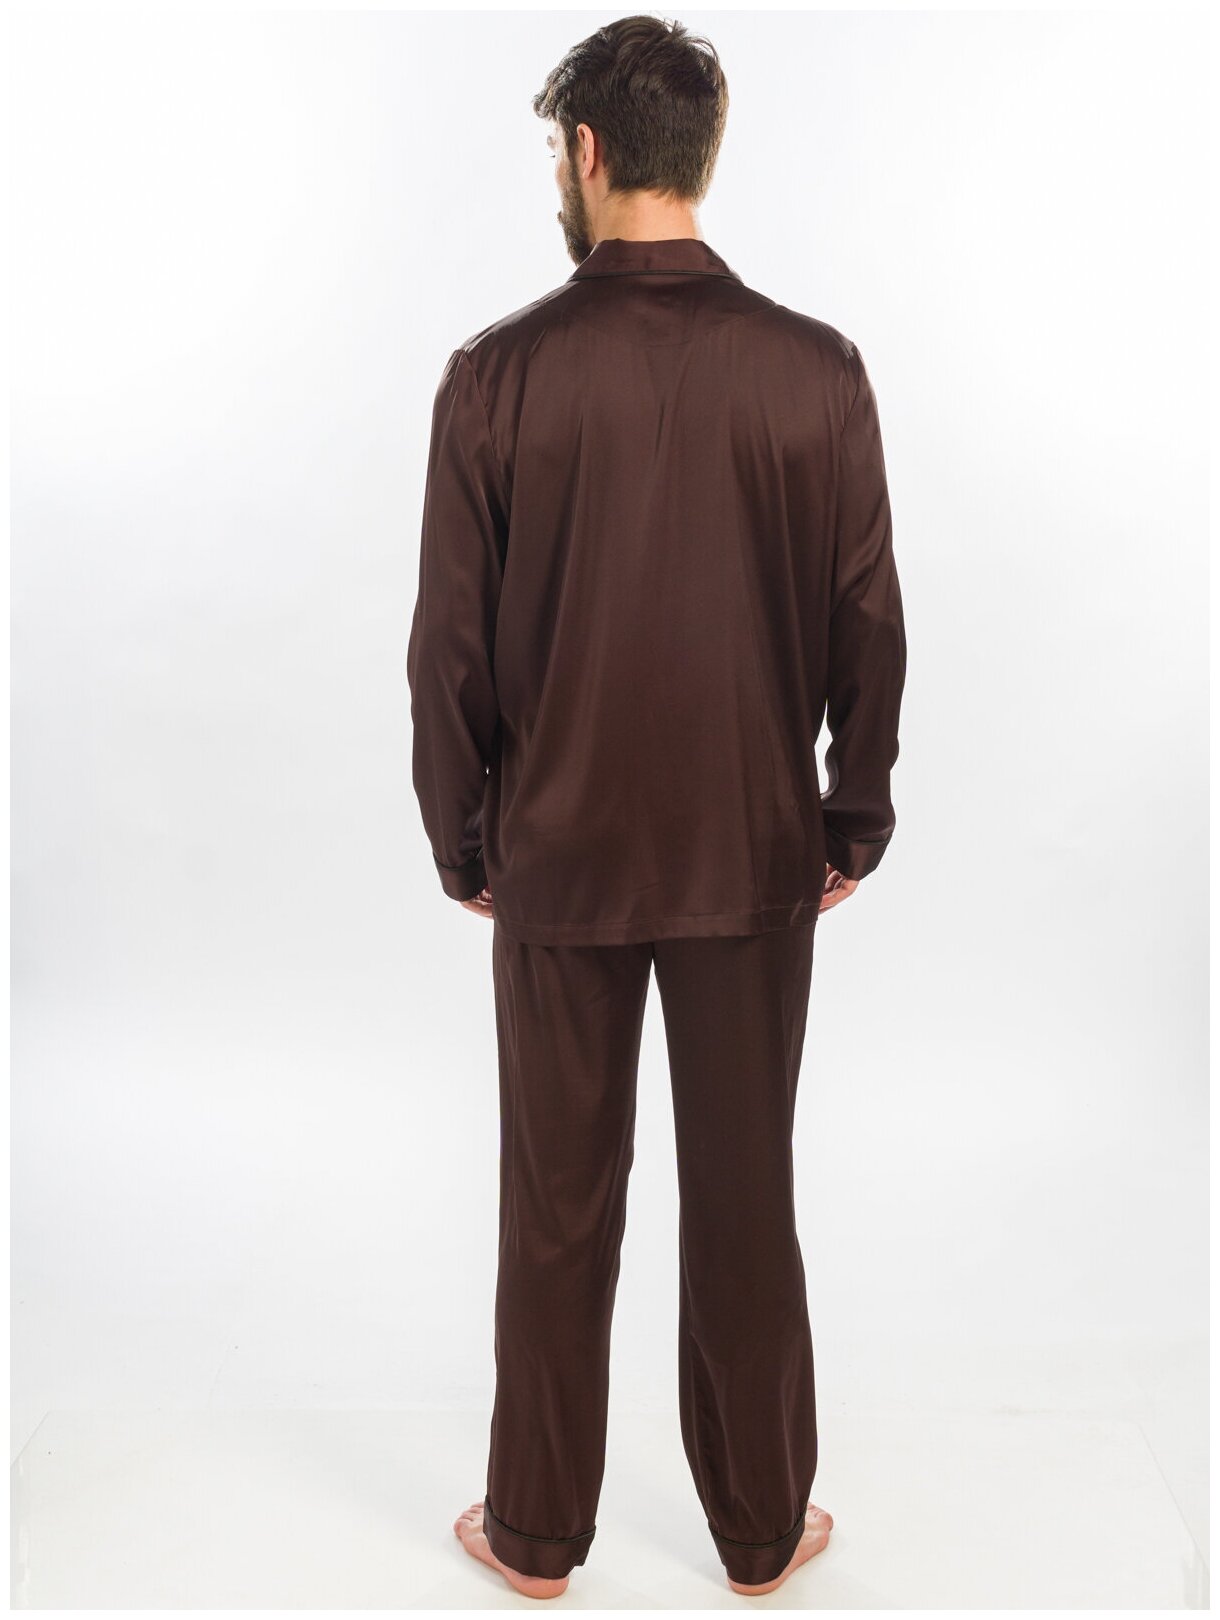 Пижама мужская Nicole Home размер XL коричневая - фотография № 4